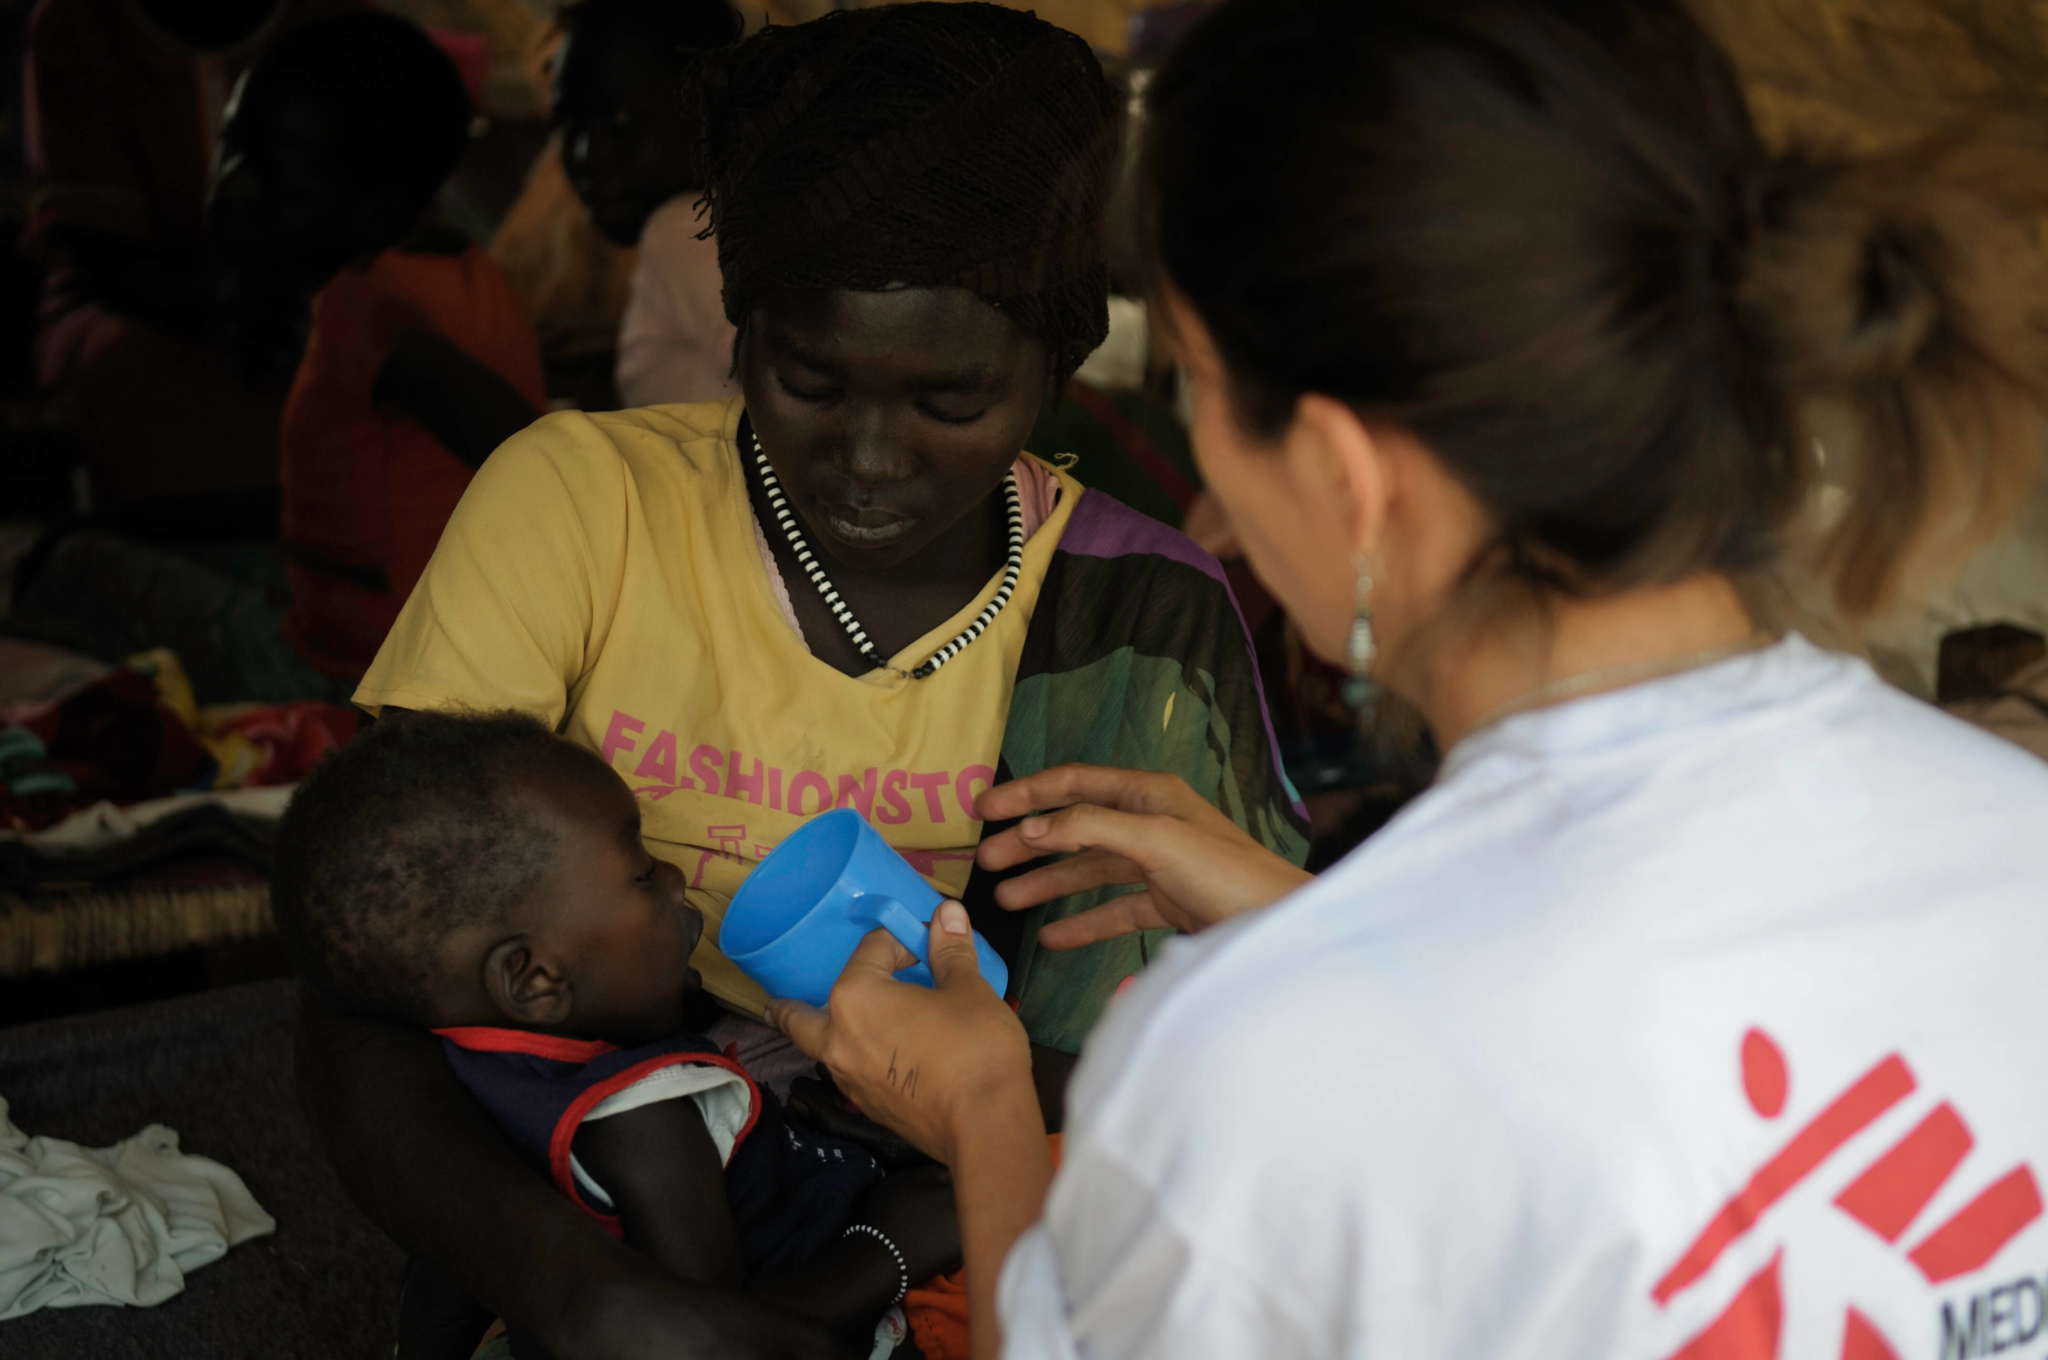 A enfermeira Natalia Bustos na clínica de MSF no acampamento de Doro. MSF alerta que a oferta de ajuda humanitária precisa ser ampliada com urgência, pois  a estação de chuvas se aproxima e os refugiados correm grande risco de ficar isolados, sem água e alimentos.